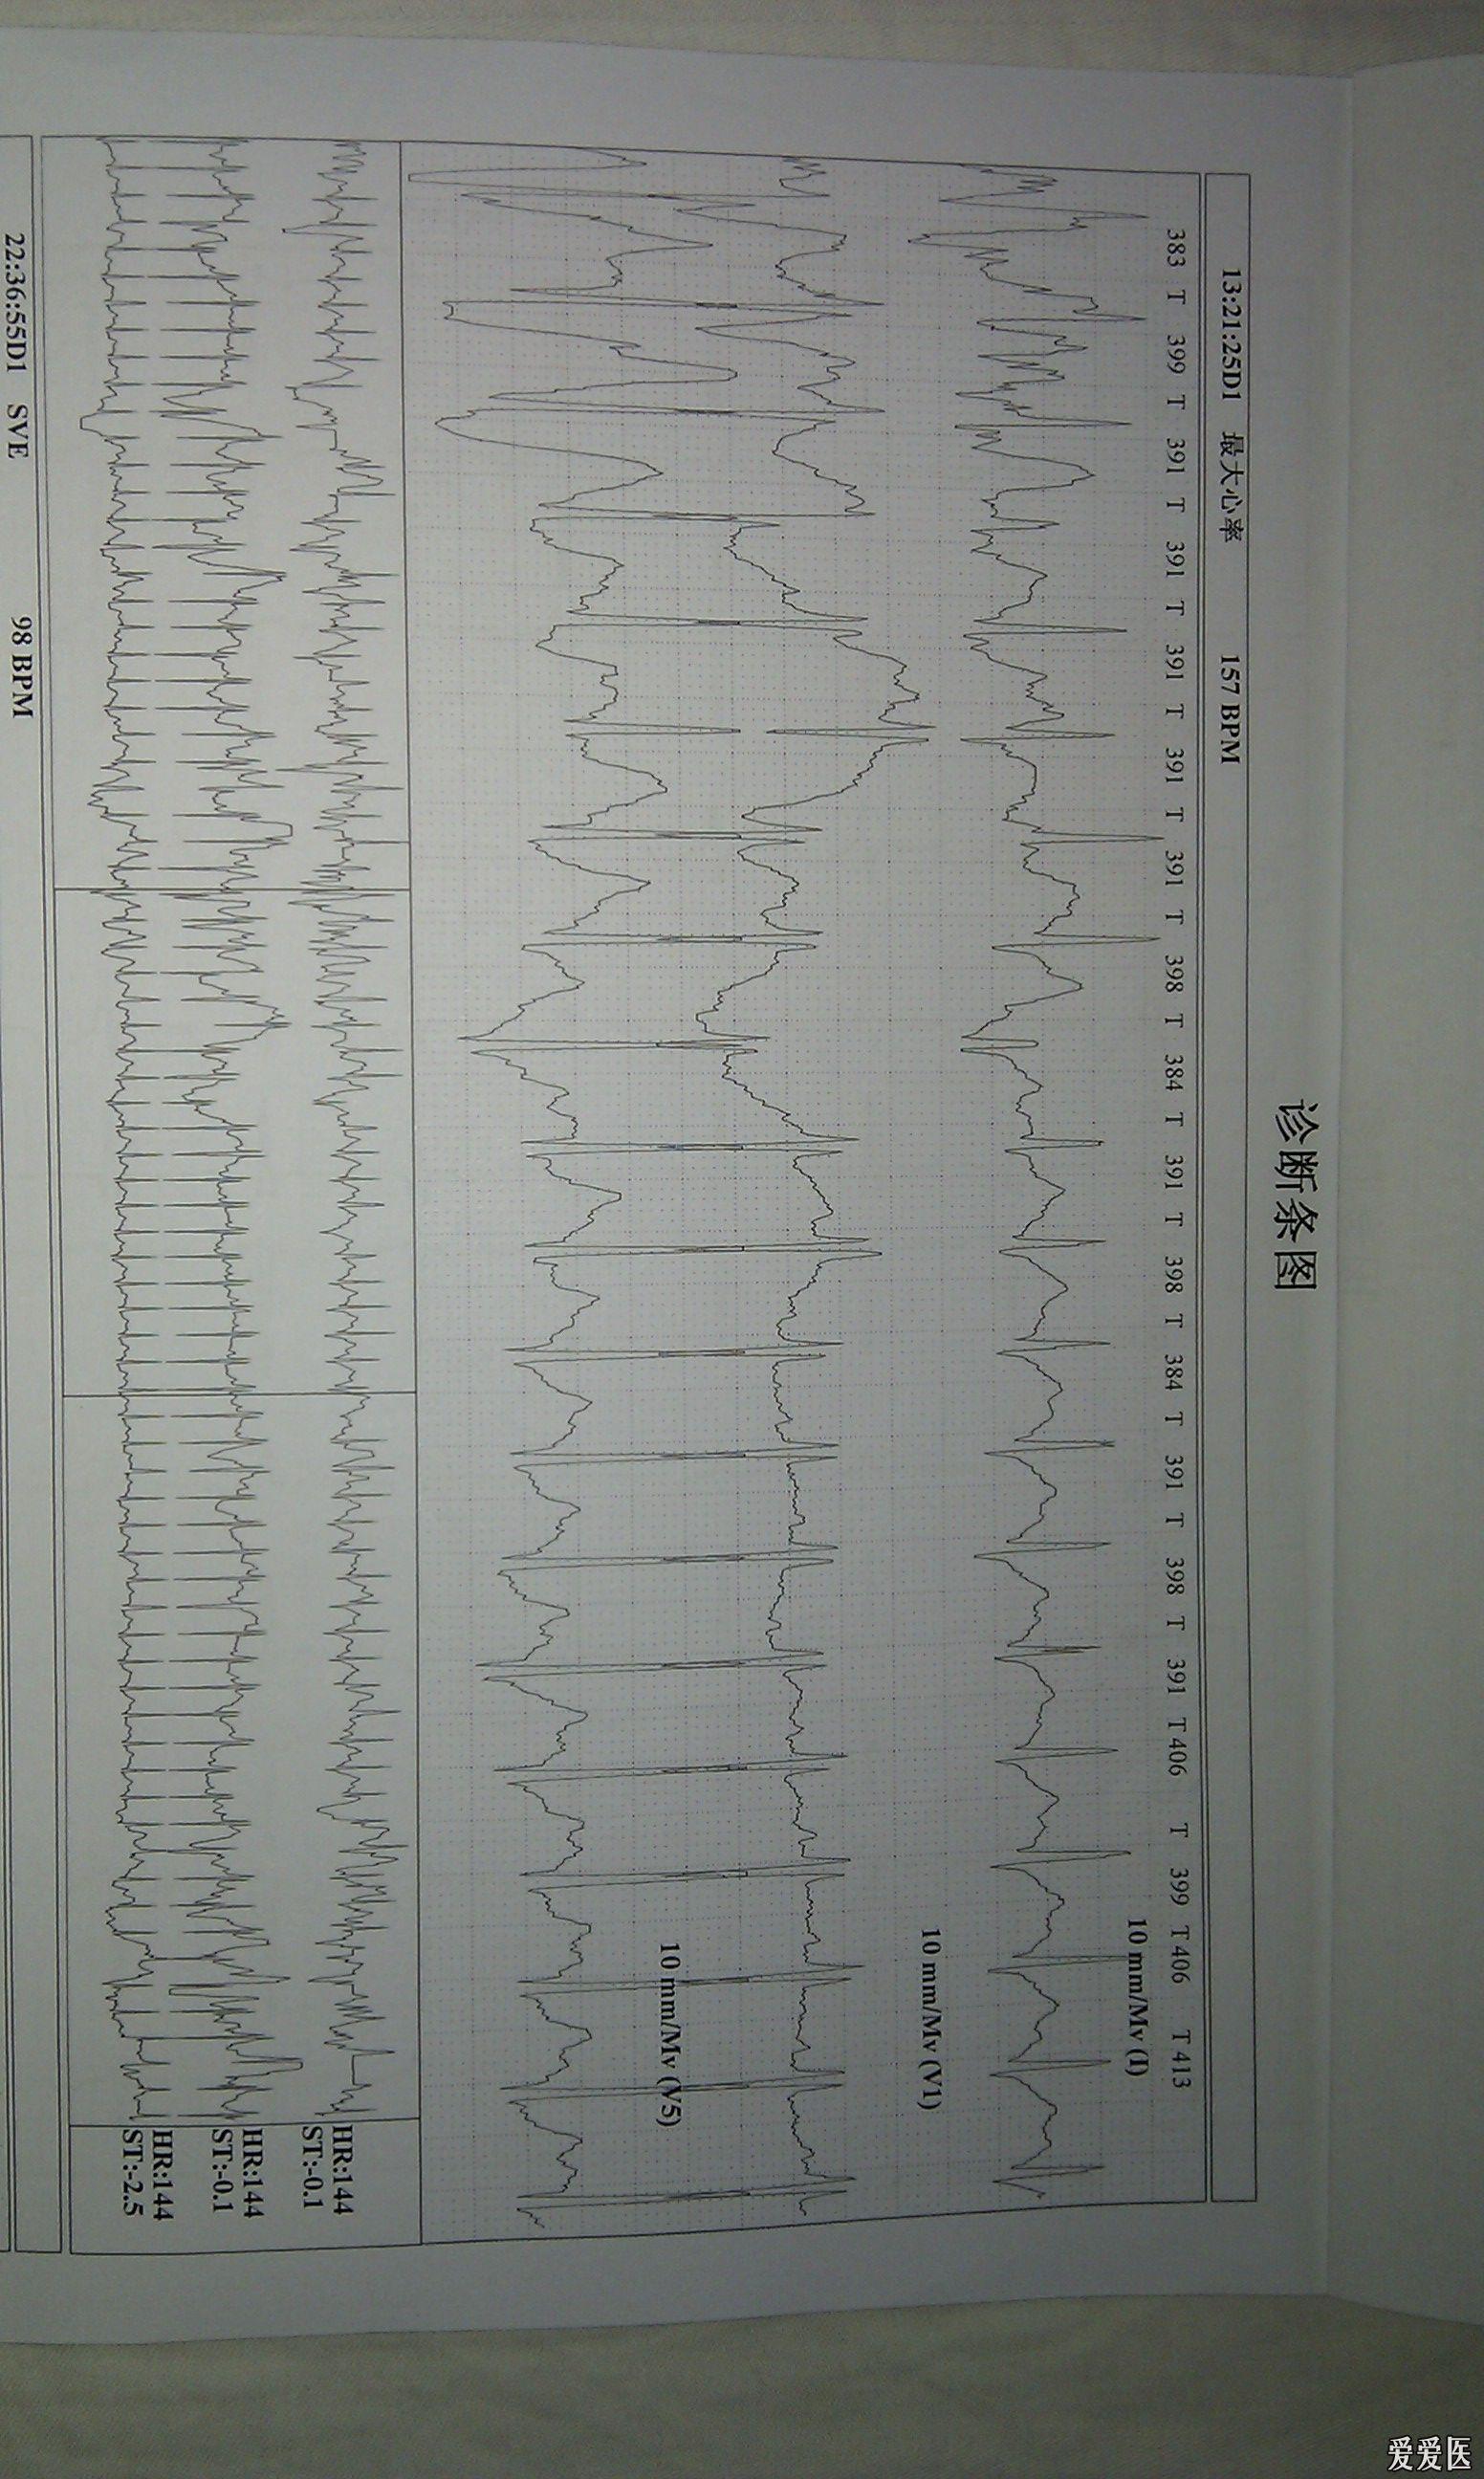 胸口闷痛,24小时心电图示最高心律157,正常么?鲜花送上